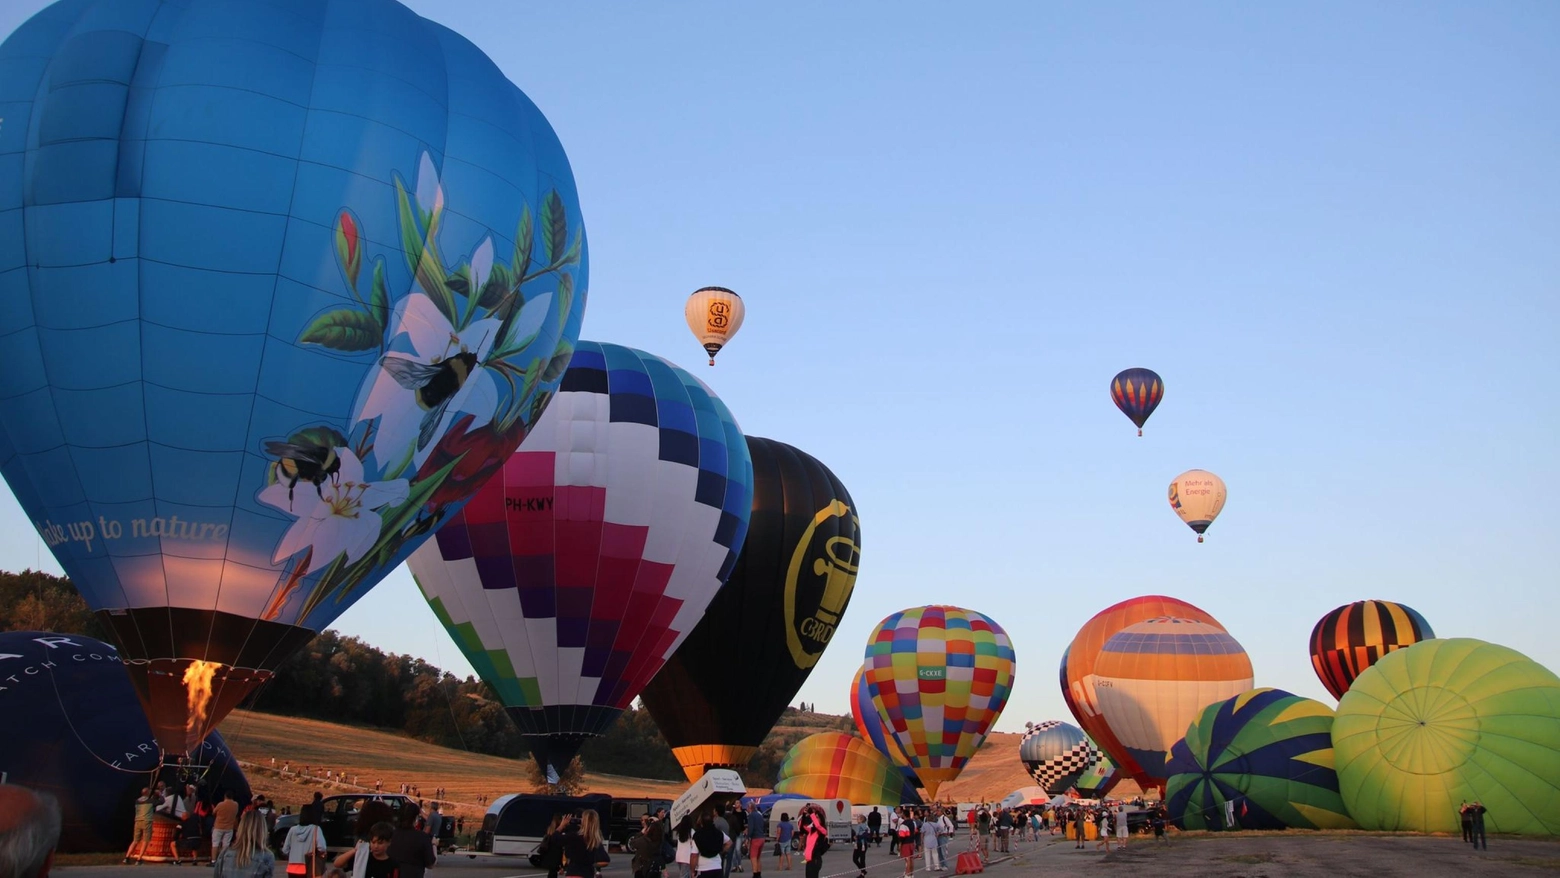 Da domani al 4 agosto i palloni colorati saranno in Umbria per la 36esima edizione dell’Italian International Balloon Grand Prix. Ecco tempi e orari dell'evento. In progress l'idea di emettere un francobollo dedicato alla manifestazione